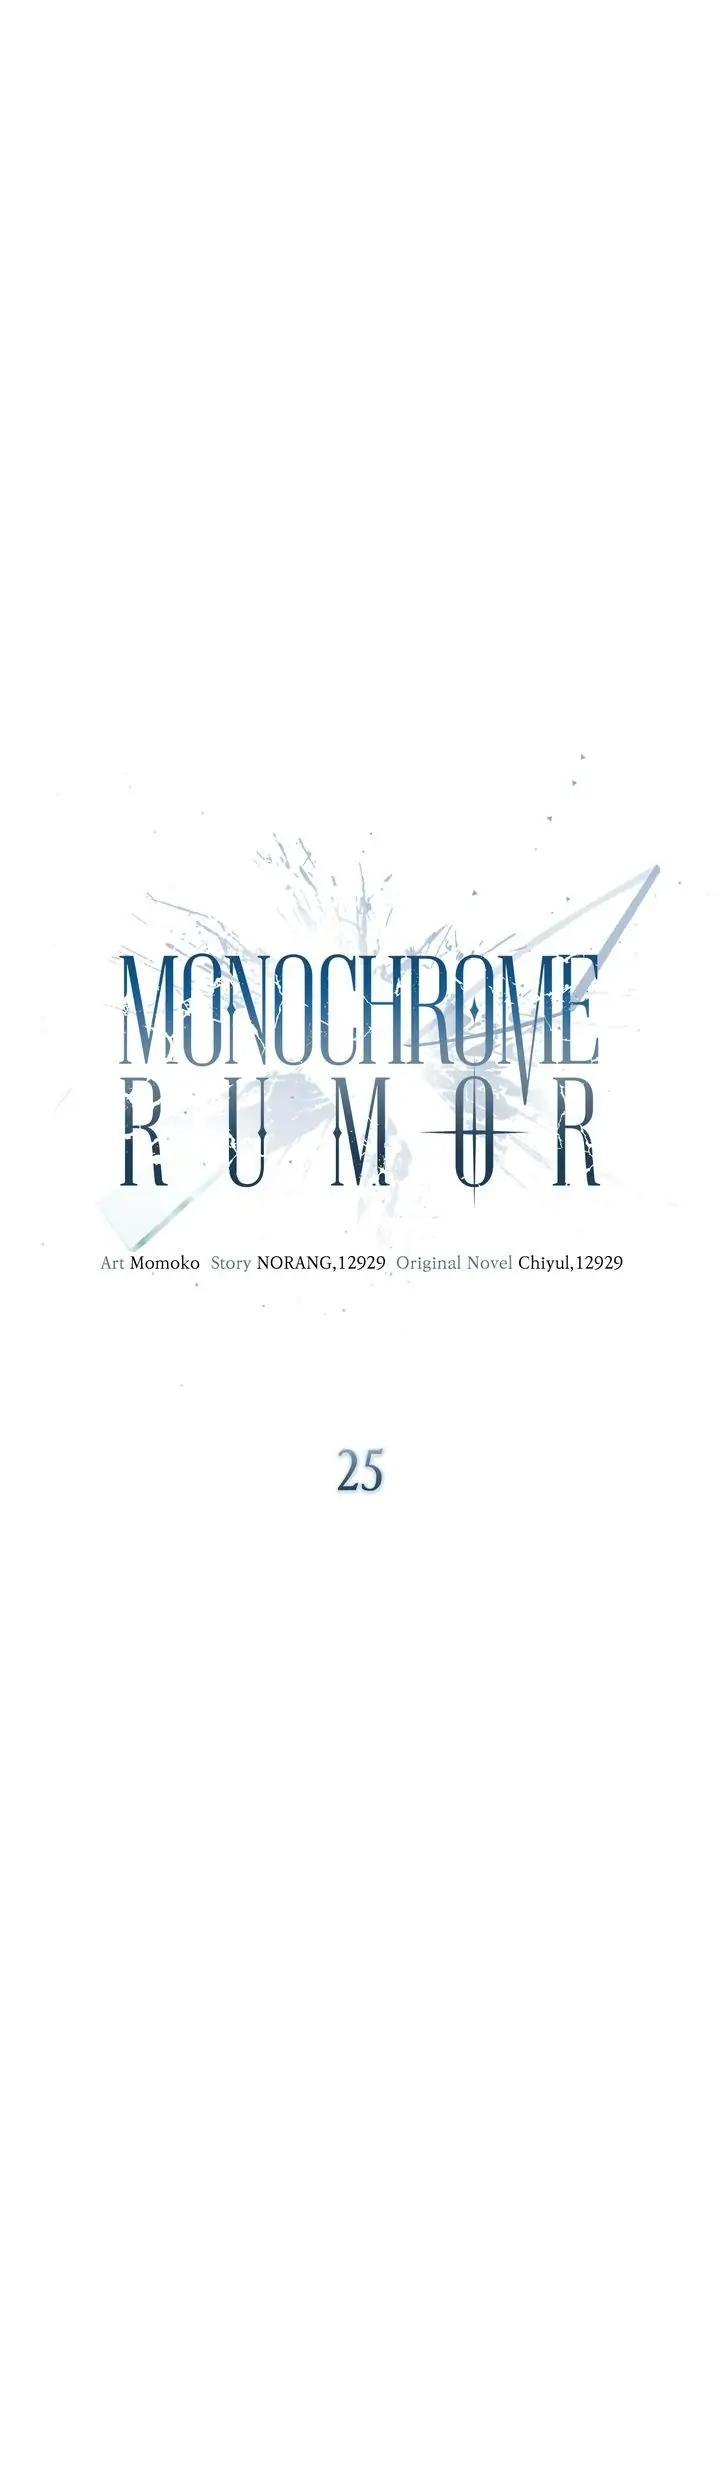 Monochrome Rumor chapter 25